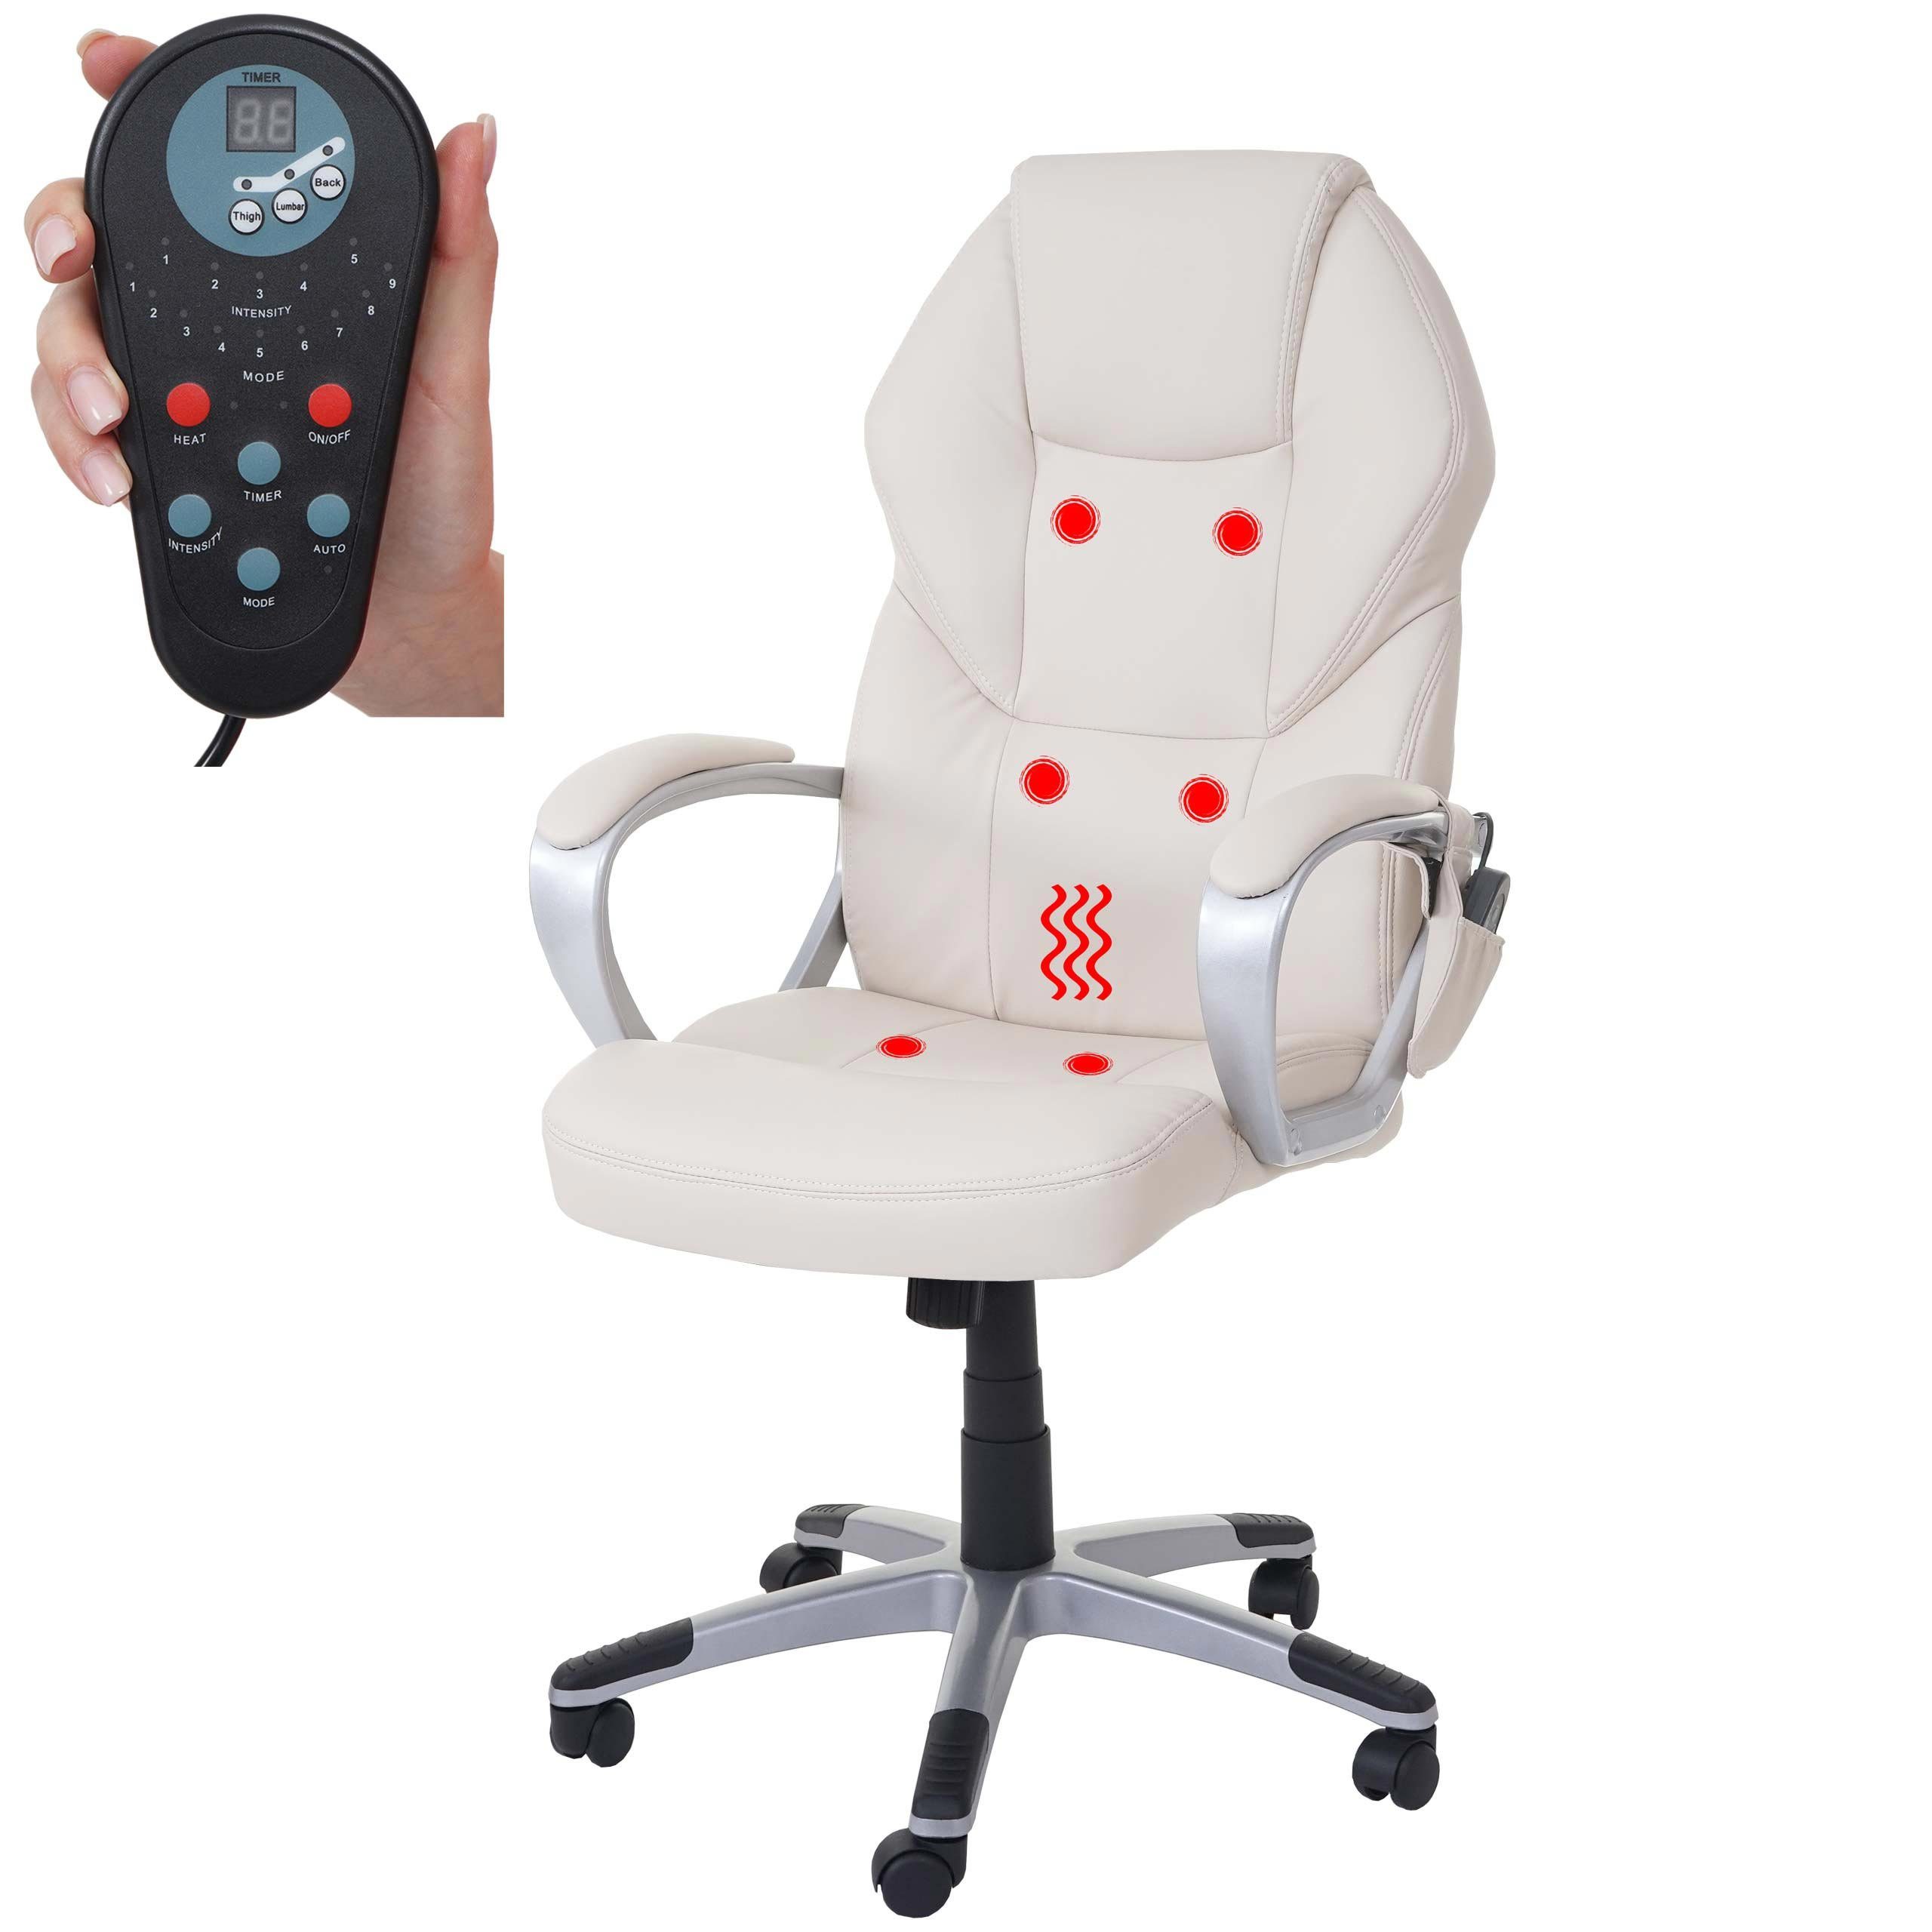 MCW Schreibtischstuhl MCW-A69, 6-Punkt-Massage, Heizfunktion Rückenlehne, Wippmechanik in einstellbar creme